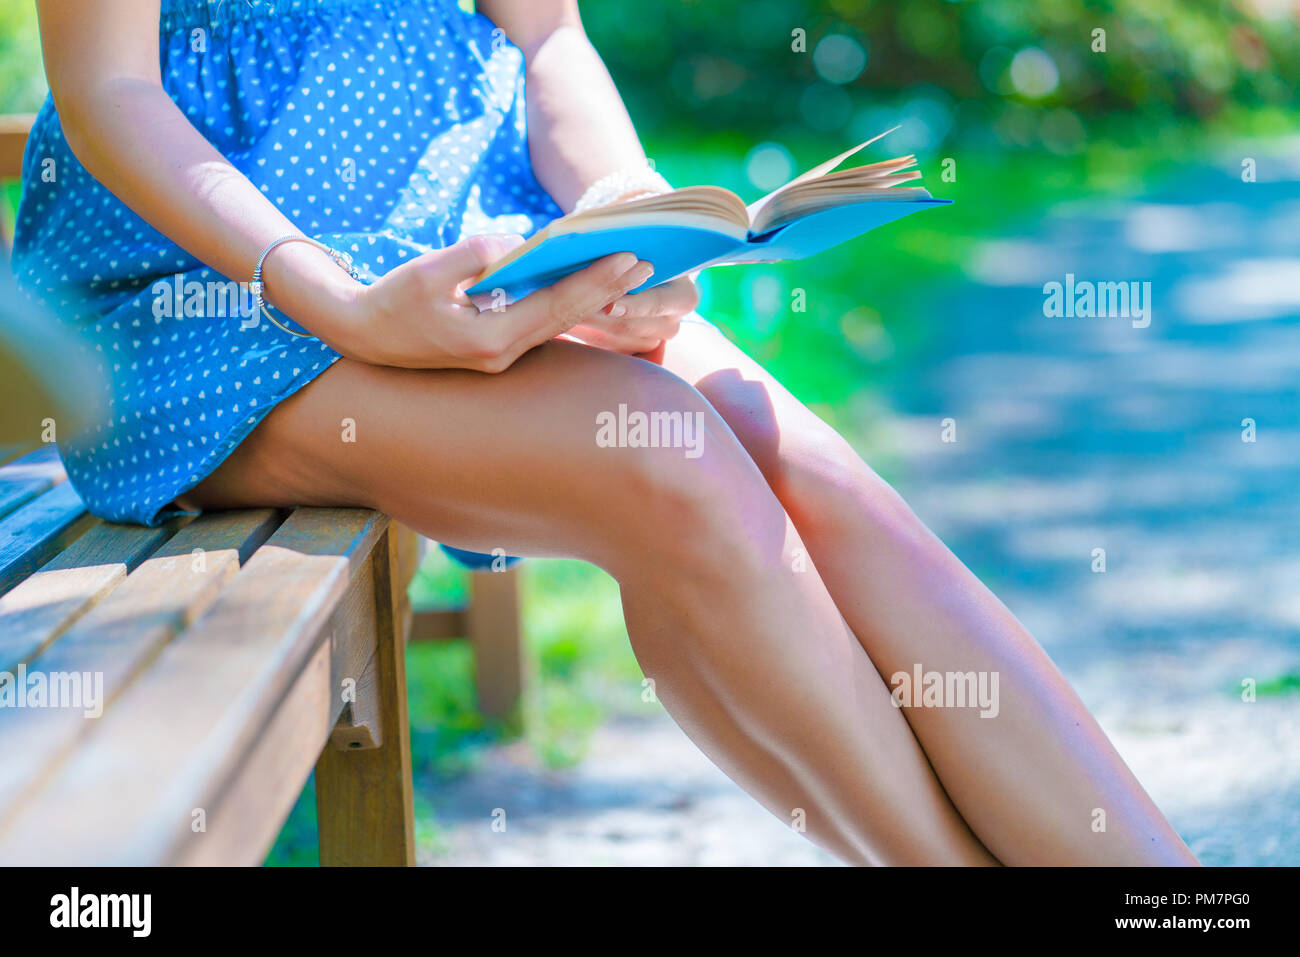 Girl wearing dress la lecture d'un livre sur un banc de parc Banque D'Images